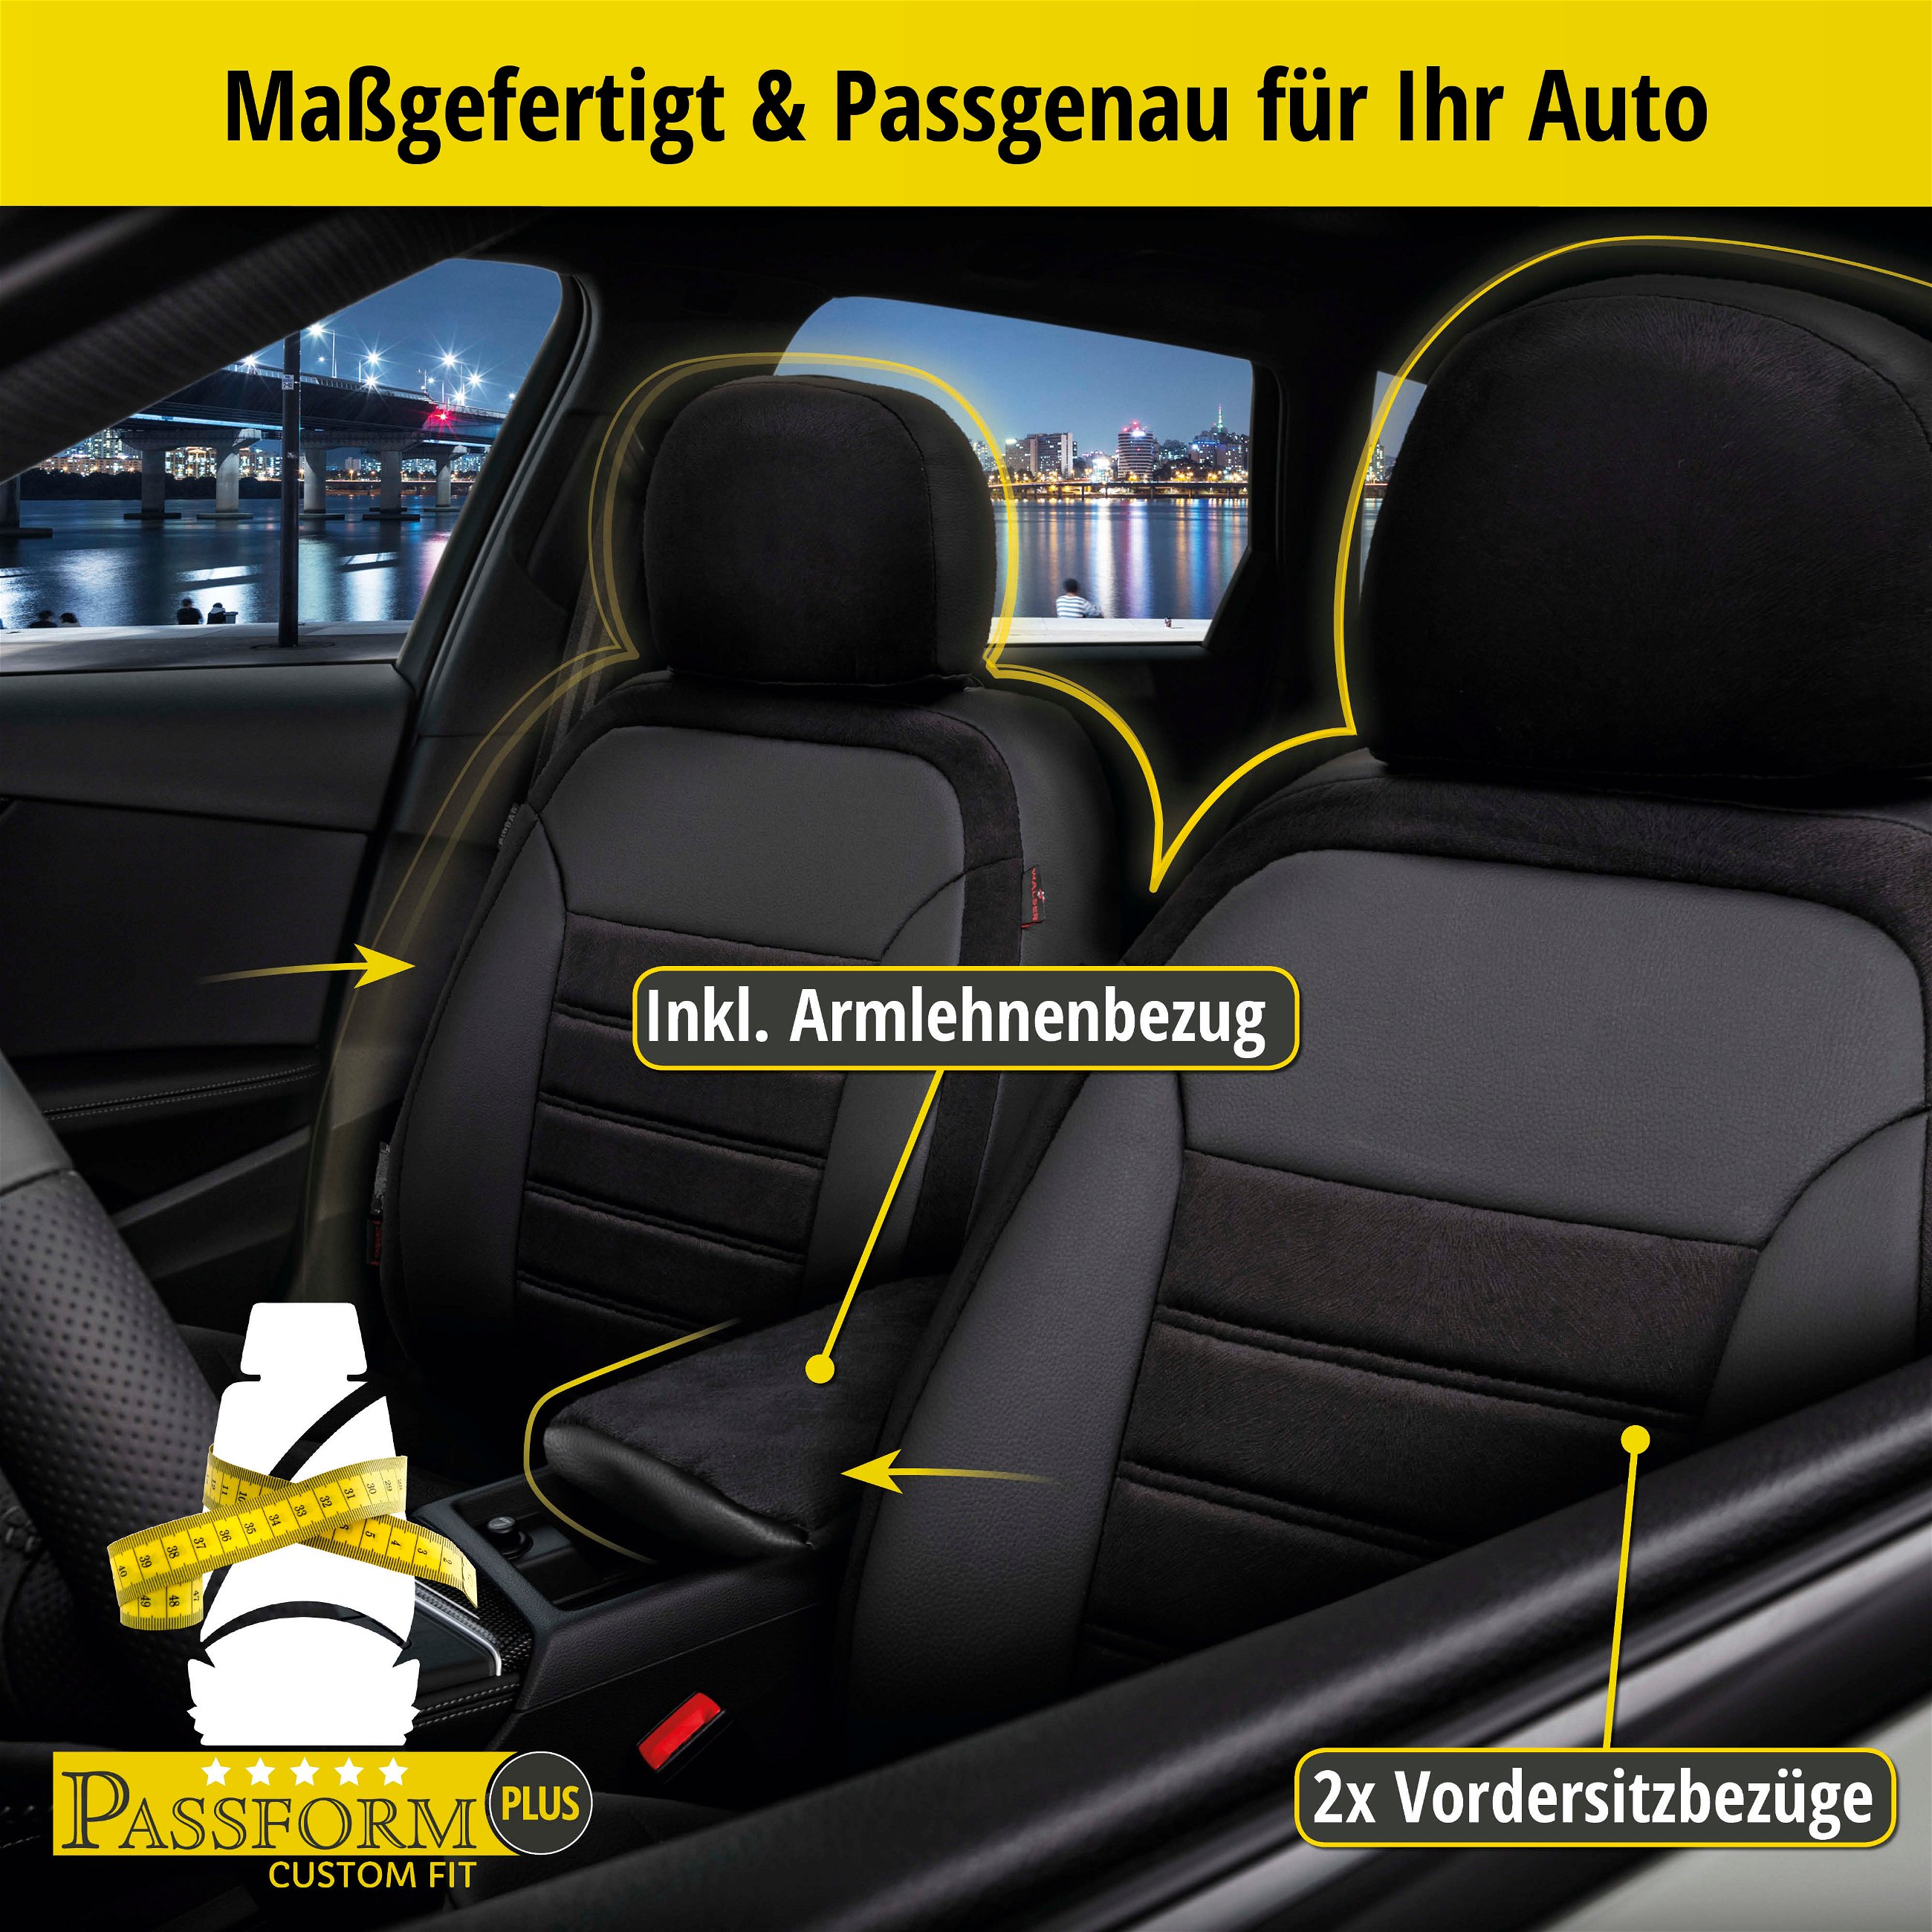 Passform Sitzbezug Bari für VW T-Roc (A11) 07/2017-Heute, 2 Einzelsitzbezüge für Normalsitze